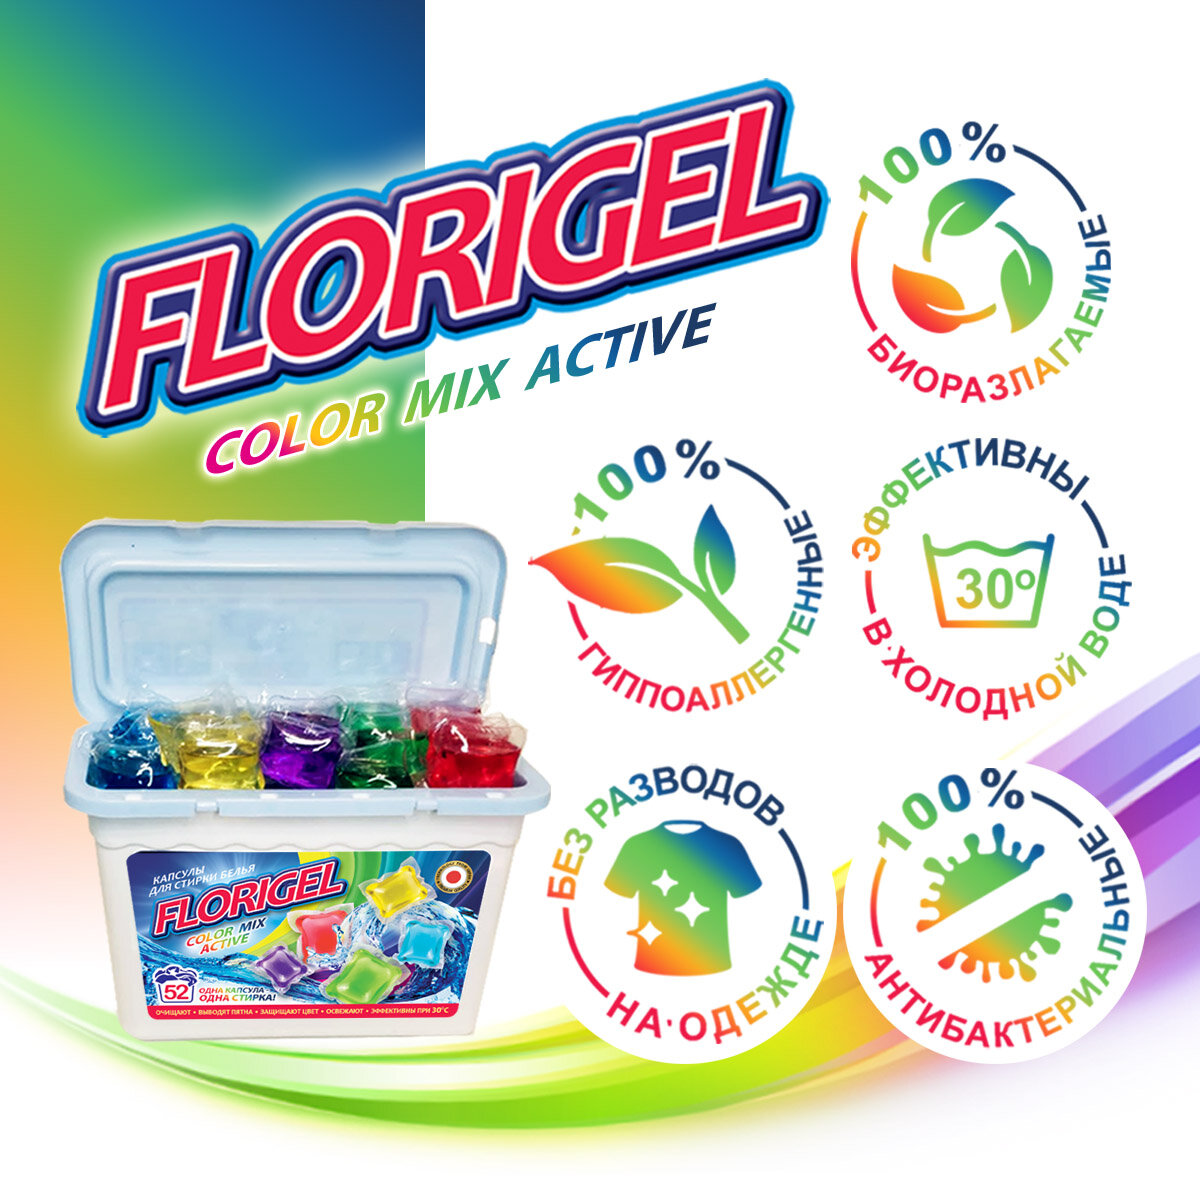 Капсулы для стирки Florigel "Color Mix Active", 52 штуки